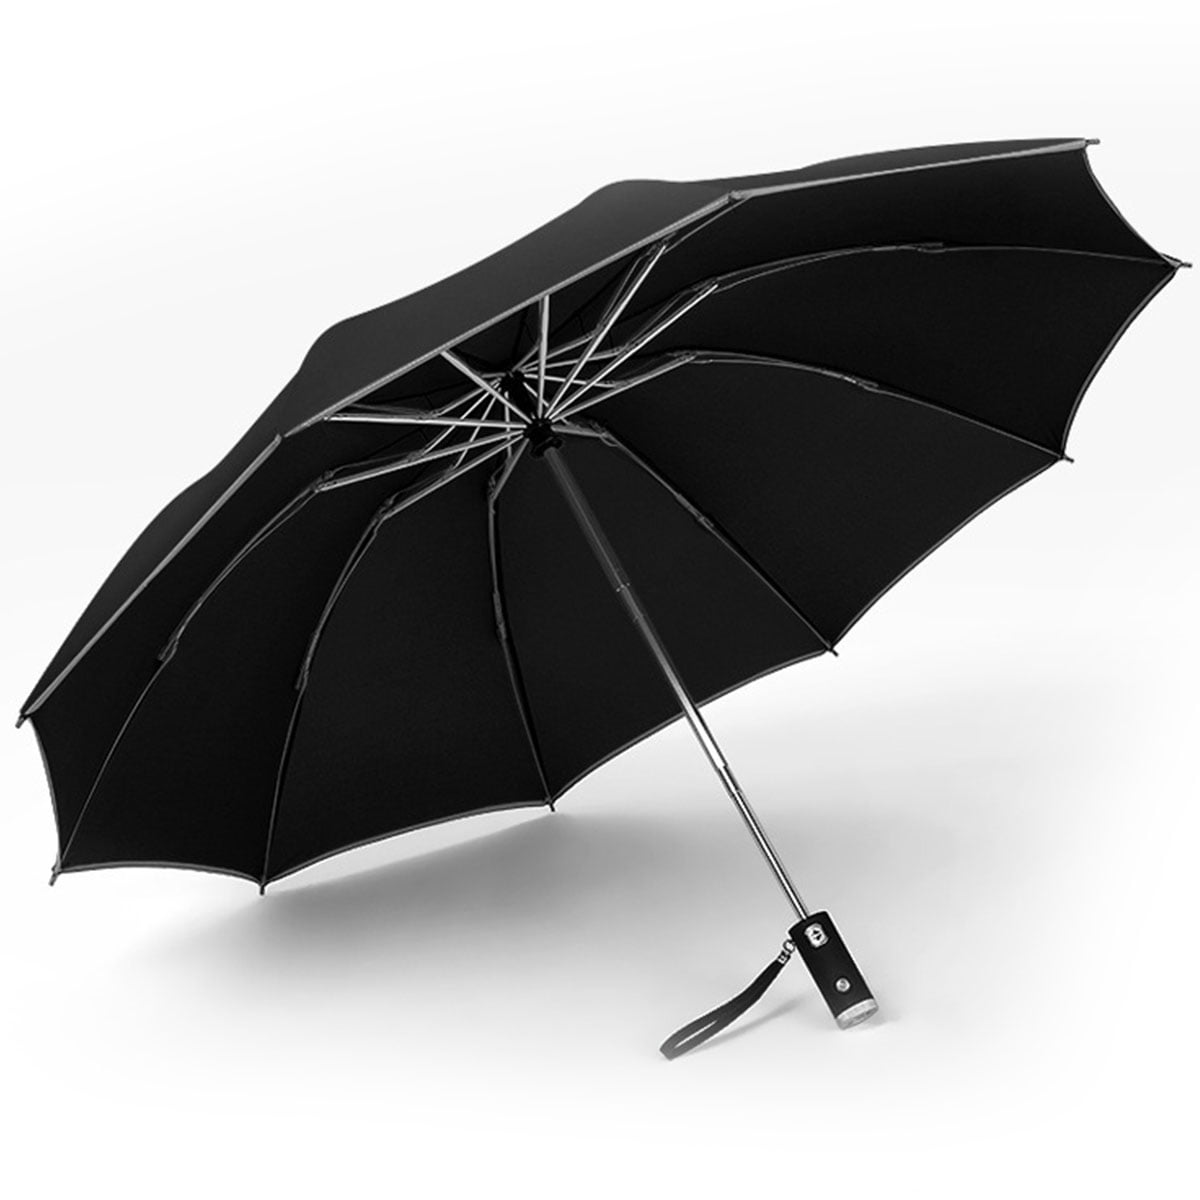 Automatic Umbrella Auto Open Close Compact Folding Anti Rain New Designed 8 Ribs 